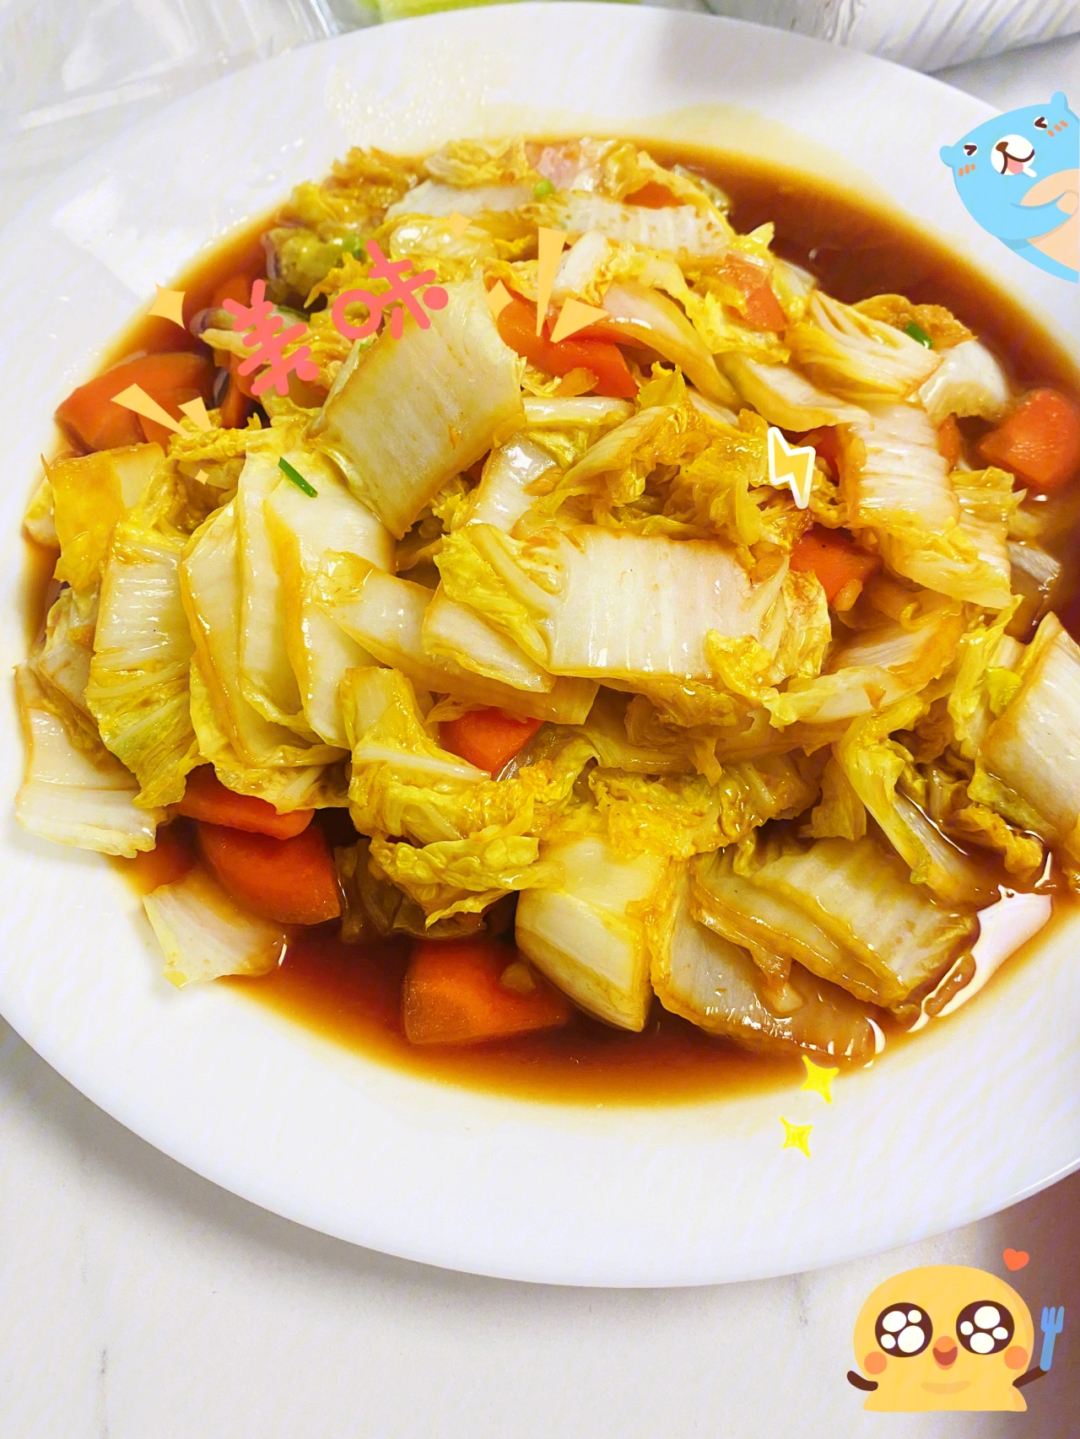 小炒娃娃菜,有锅就能做配料:娃娃菜一颗,胡萝卜09,葱大蒜,食用油